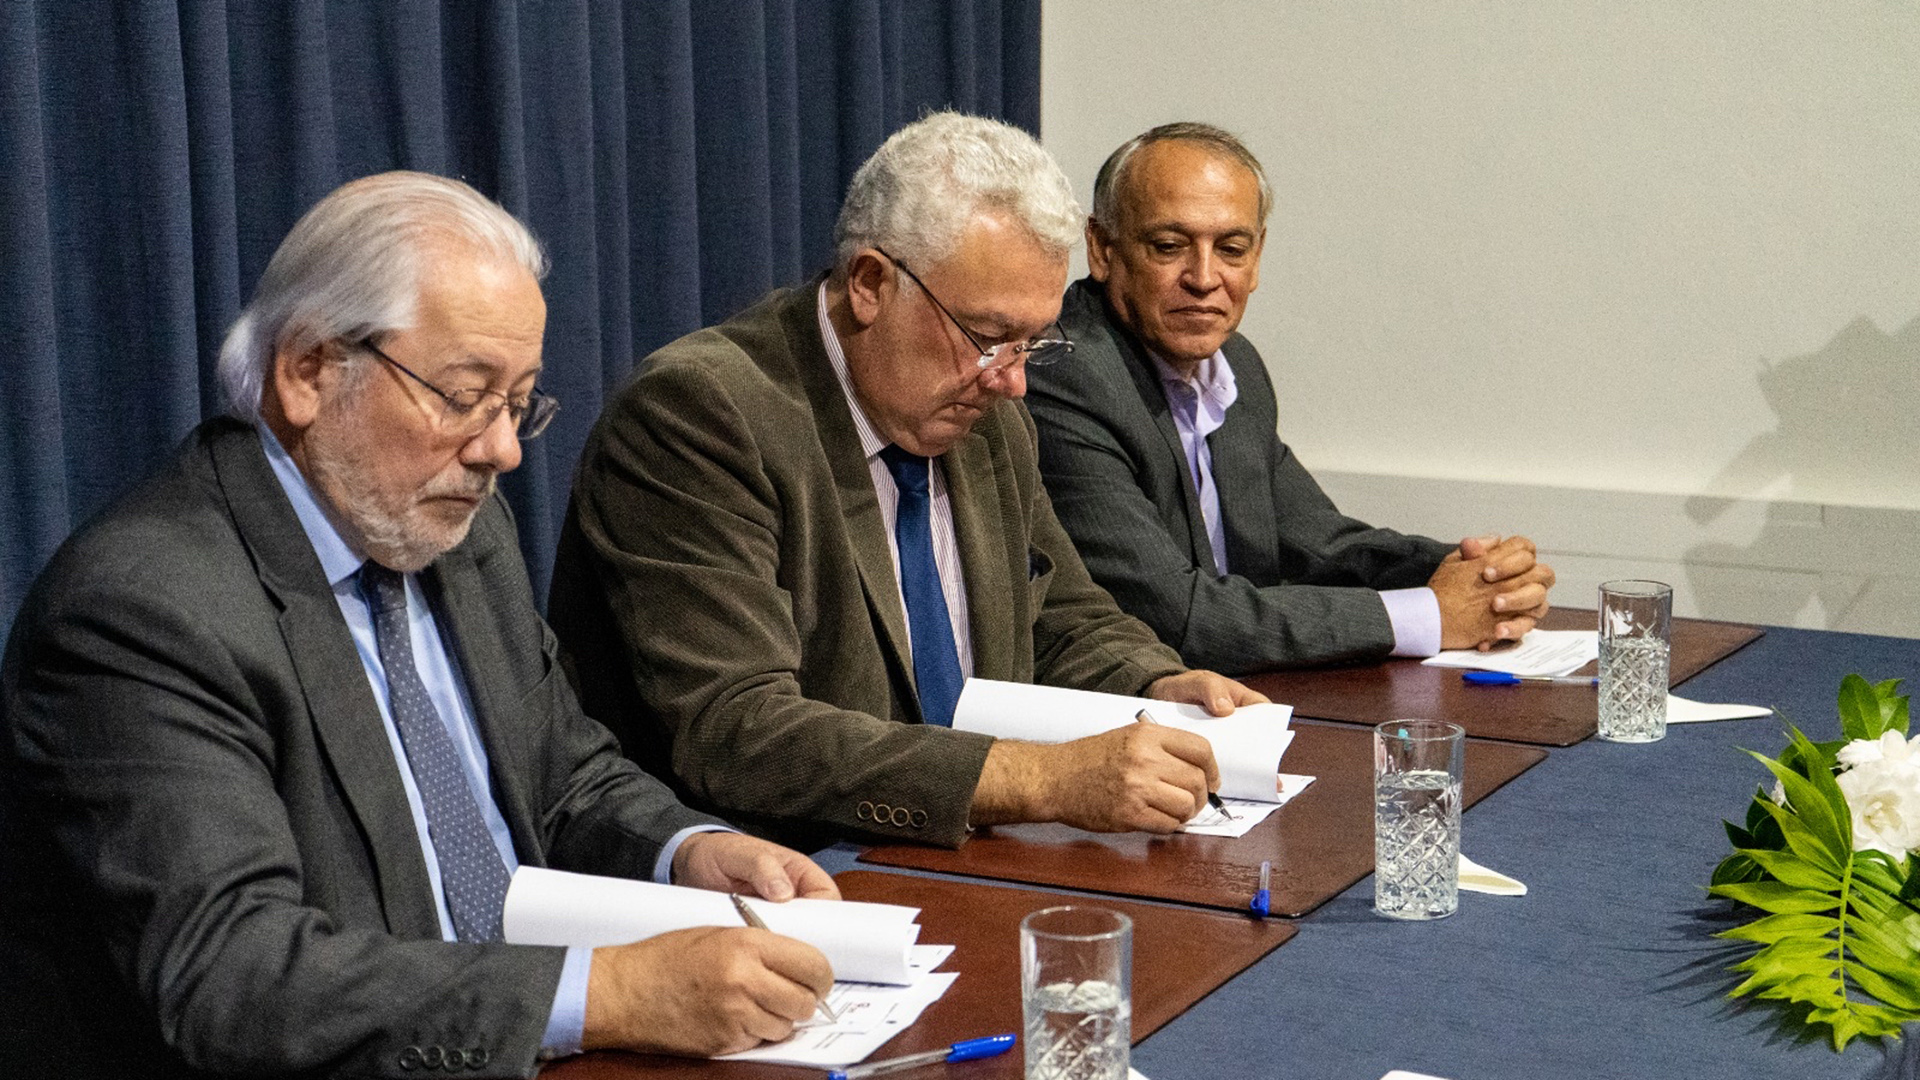 Assinatura de um protocolo de cooperação entre a Região Autónoma dos Açores, a Faculdade de Economia da Universidade de Coimbra e o Centro de Estudos Sociais relativo à estratégia regional de combate à pobreza e exclusão social